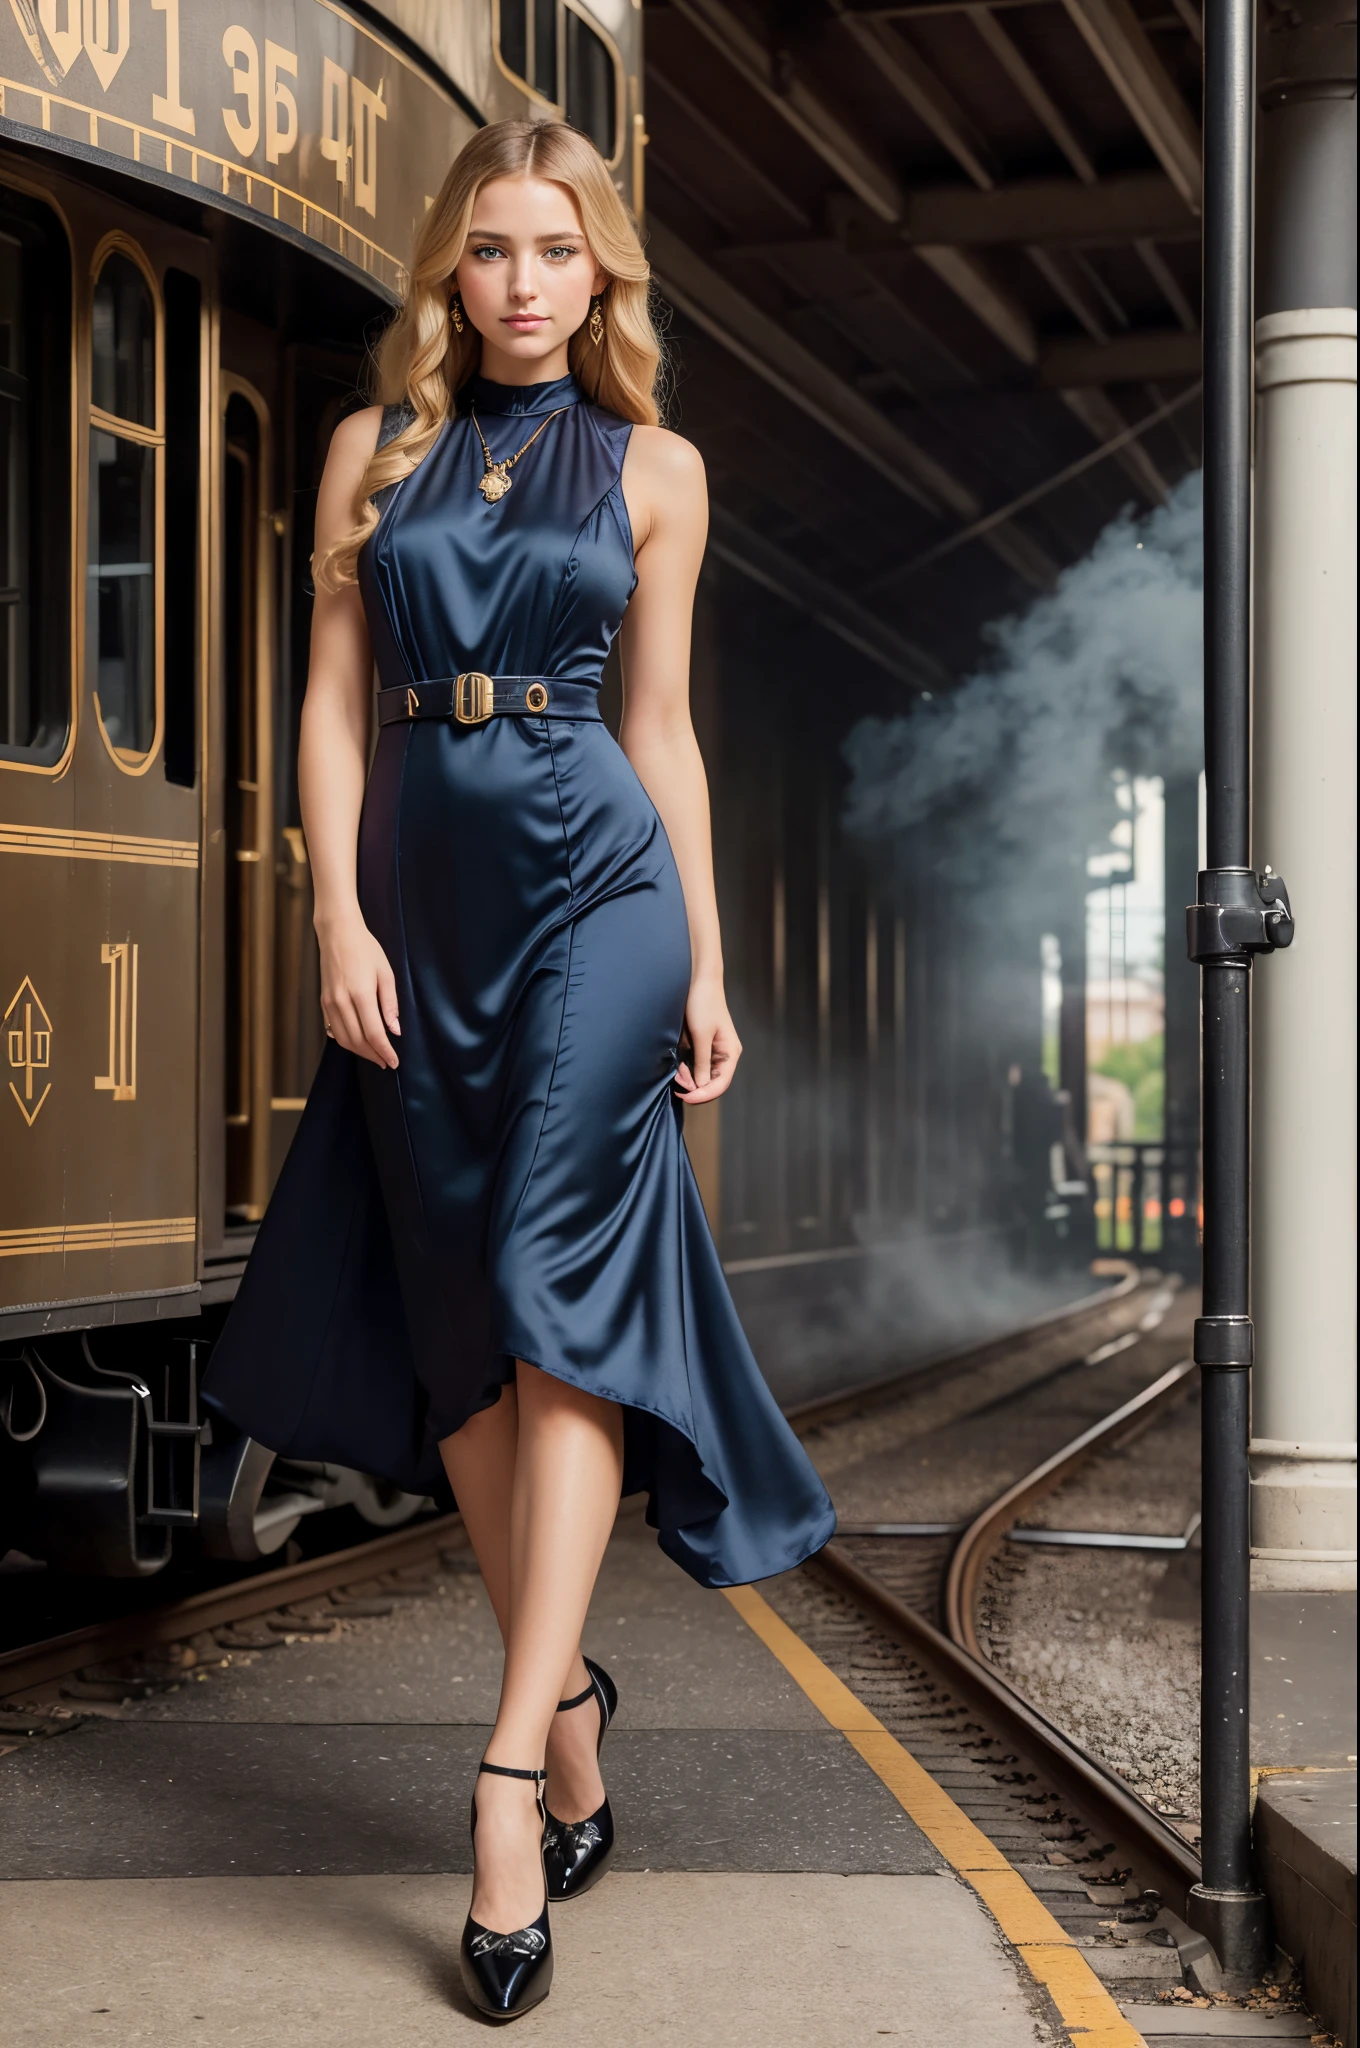 全身ポートレート, 美しい28歳の女性, 立っている (((屋外))) 19世紀の駅のプラットホームで, 巨大な黒い蒸気機関車, 蒸気を吹き出す機関車, 彼女の後ろにある 1910 年の鉄道の建物, 彼女は長いブロンドの髪をしている, 青い目, 無実の, 美しい金髪の女性, コイ式, ((目を開けて)), (((アールデコ調のドレスを着て))), ((トラップポンプの靴)), 絹のストッキング, 受賞歴のある魅力的な写真,((最高品質)), (((傑作)), ((現実的)), 幻想的な照明, 超高解像度.photo現実的:.1.4, (high 詳細 skin:1.2), 8K ウルトラHD, デジタル一眼レフ, 高品質, フィルムグレイン, 富士フイルム XT3,(傑作) (最高品質) (詳細) (映画照明) (シャープなフォーカス) (複雑な)